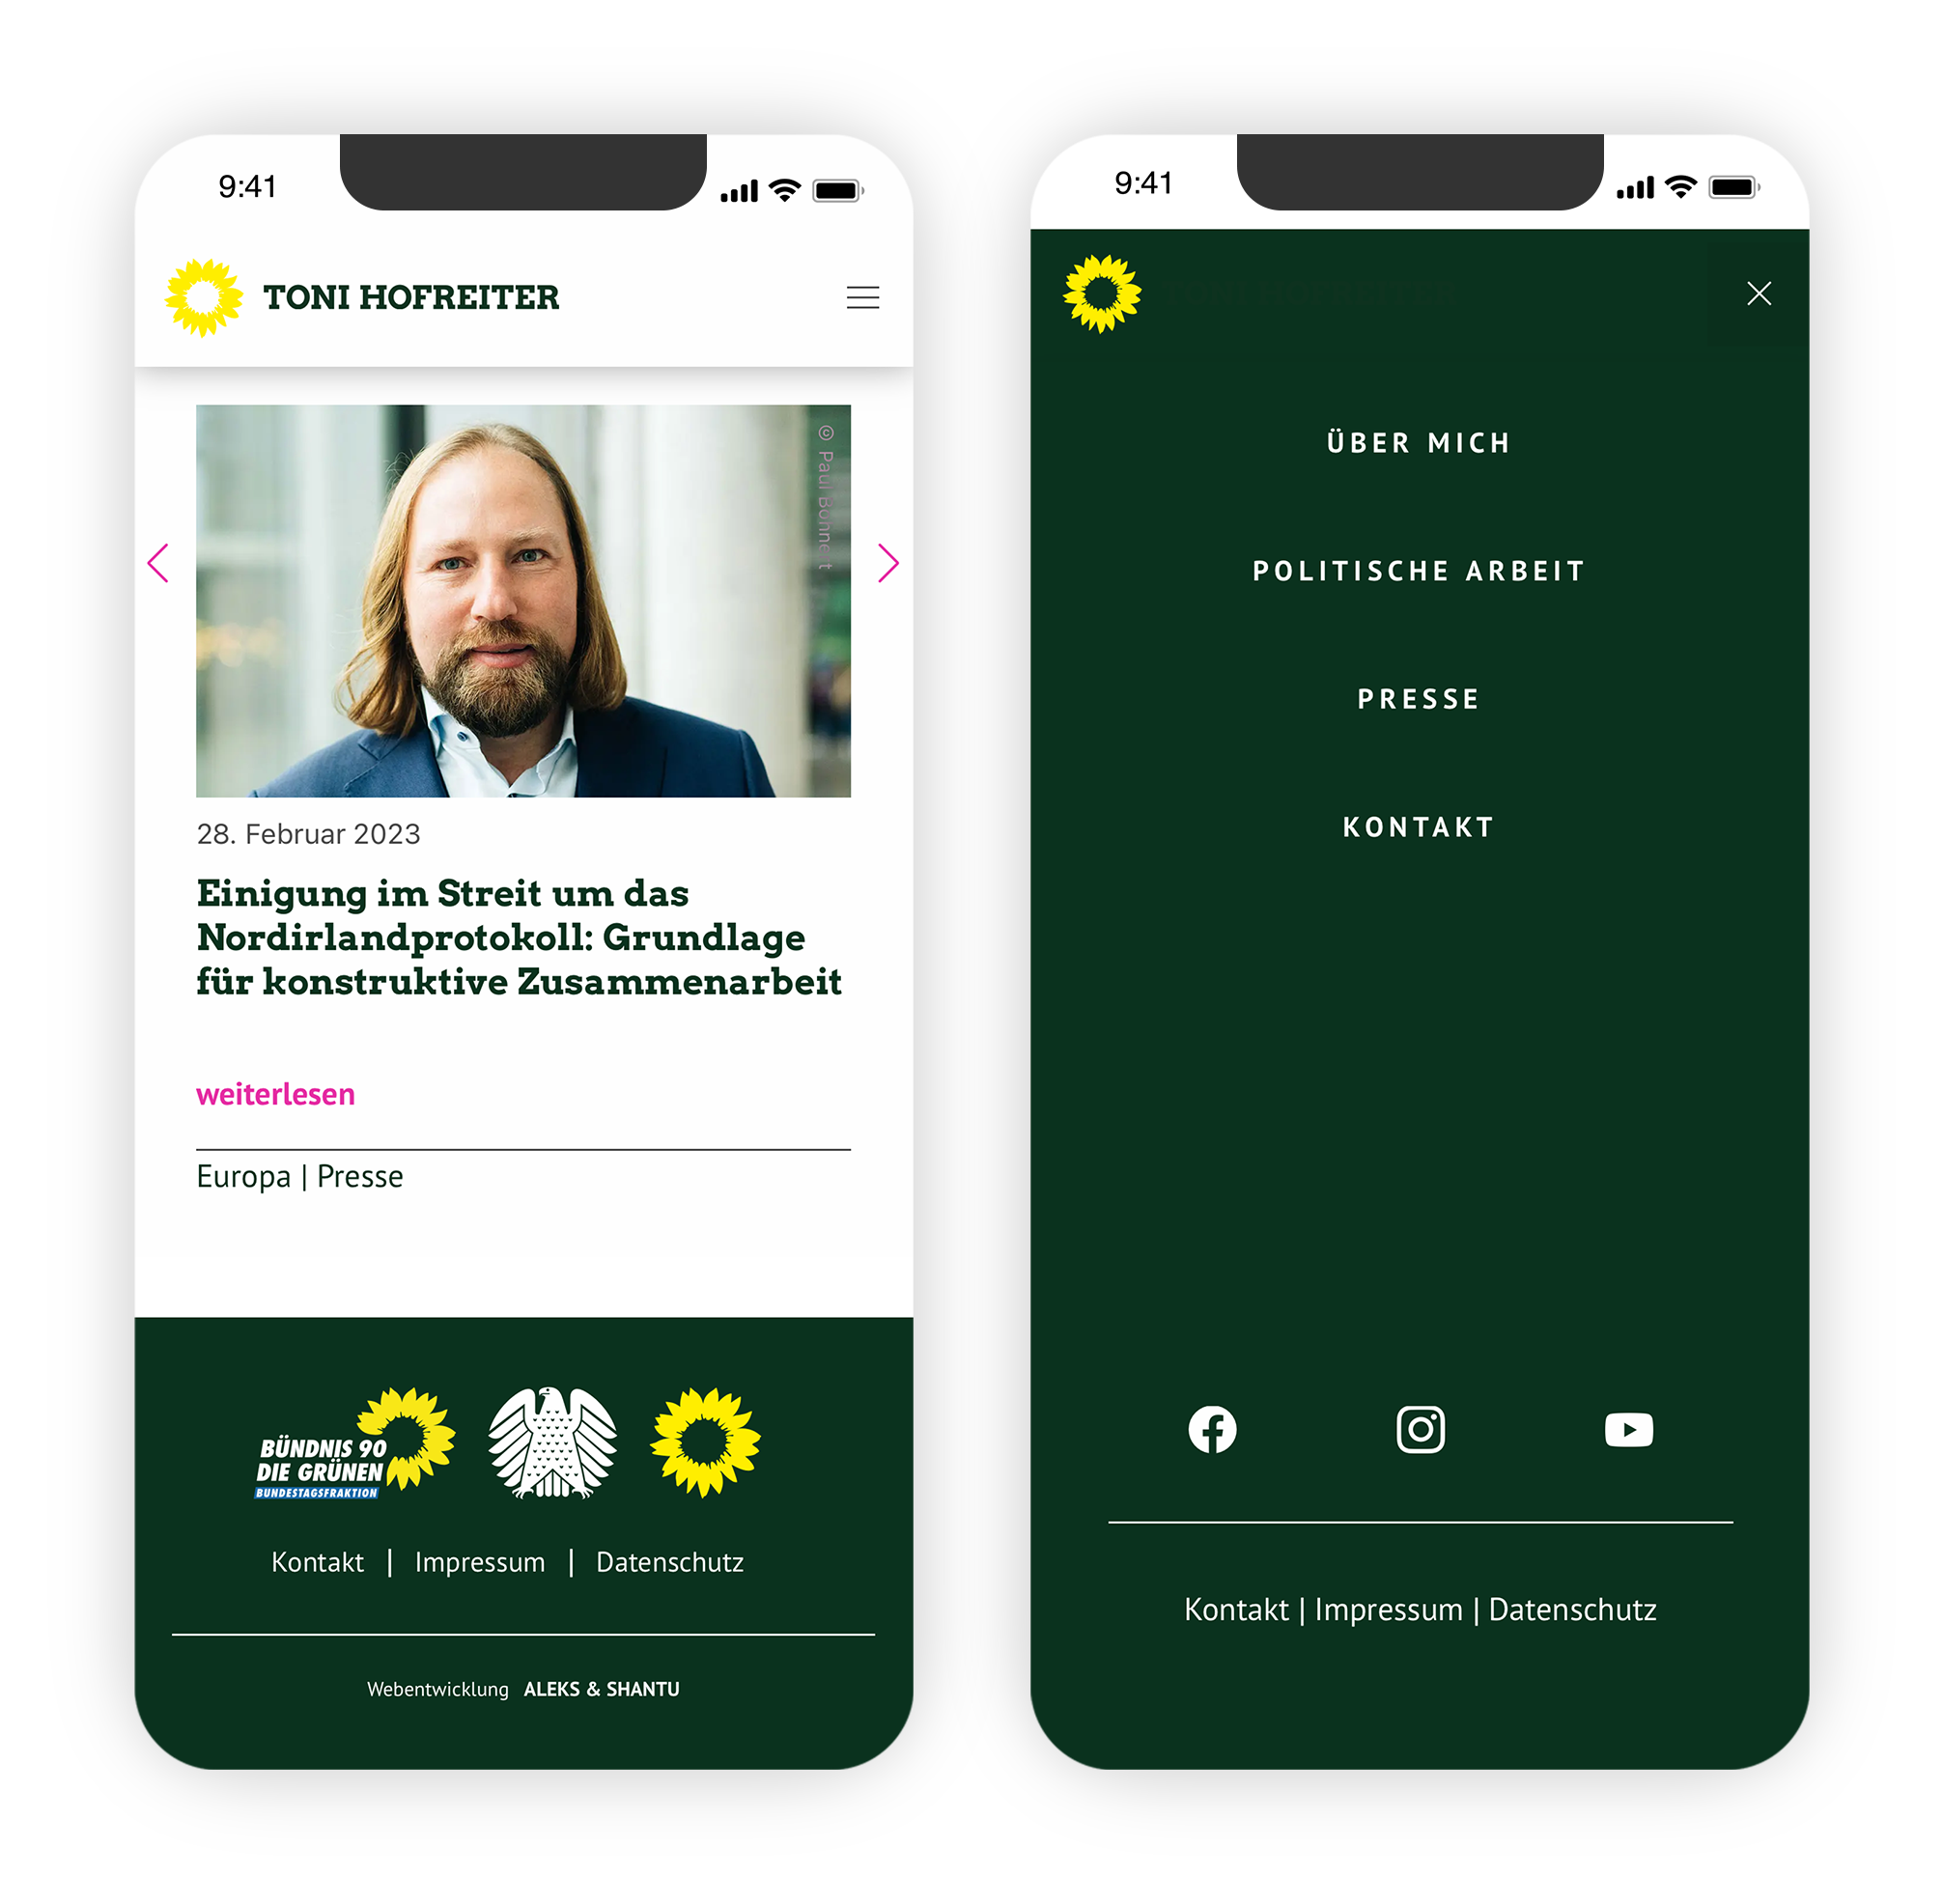 Zwei Smartphone-Screens zeigen die Anton-Hofreiter-Website mit einem Slider, Text und Kategorien sowie dem aufgeklappten Hauptmenü.